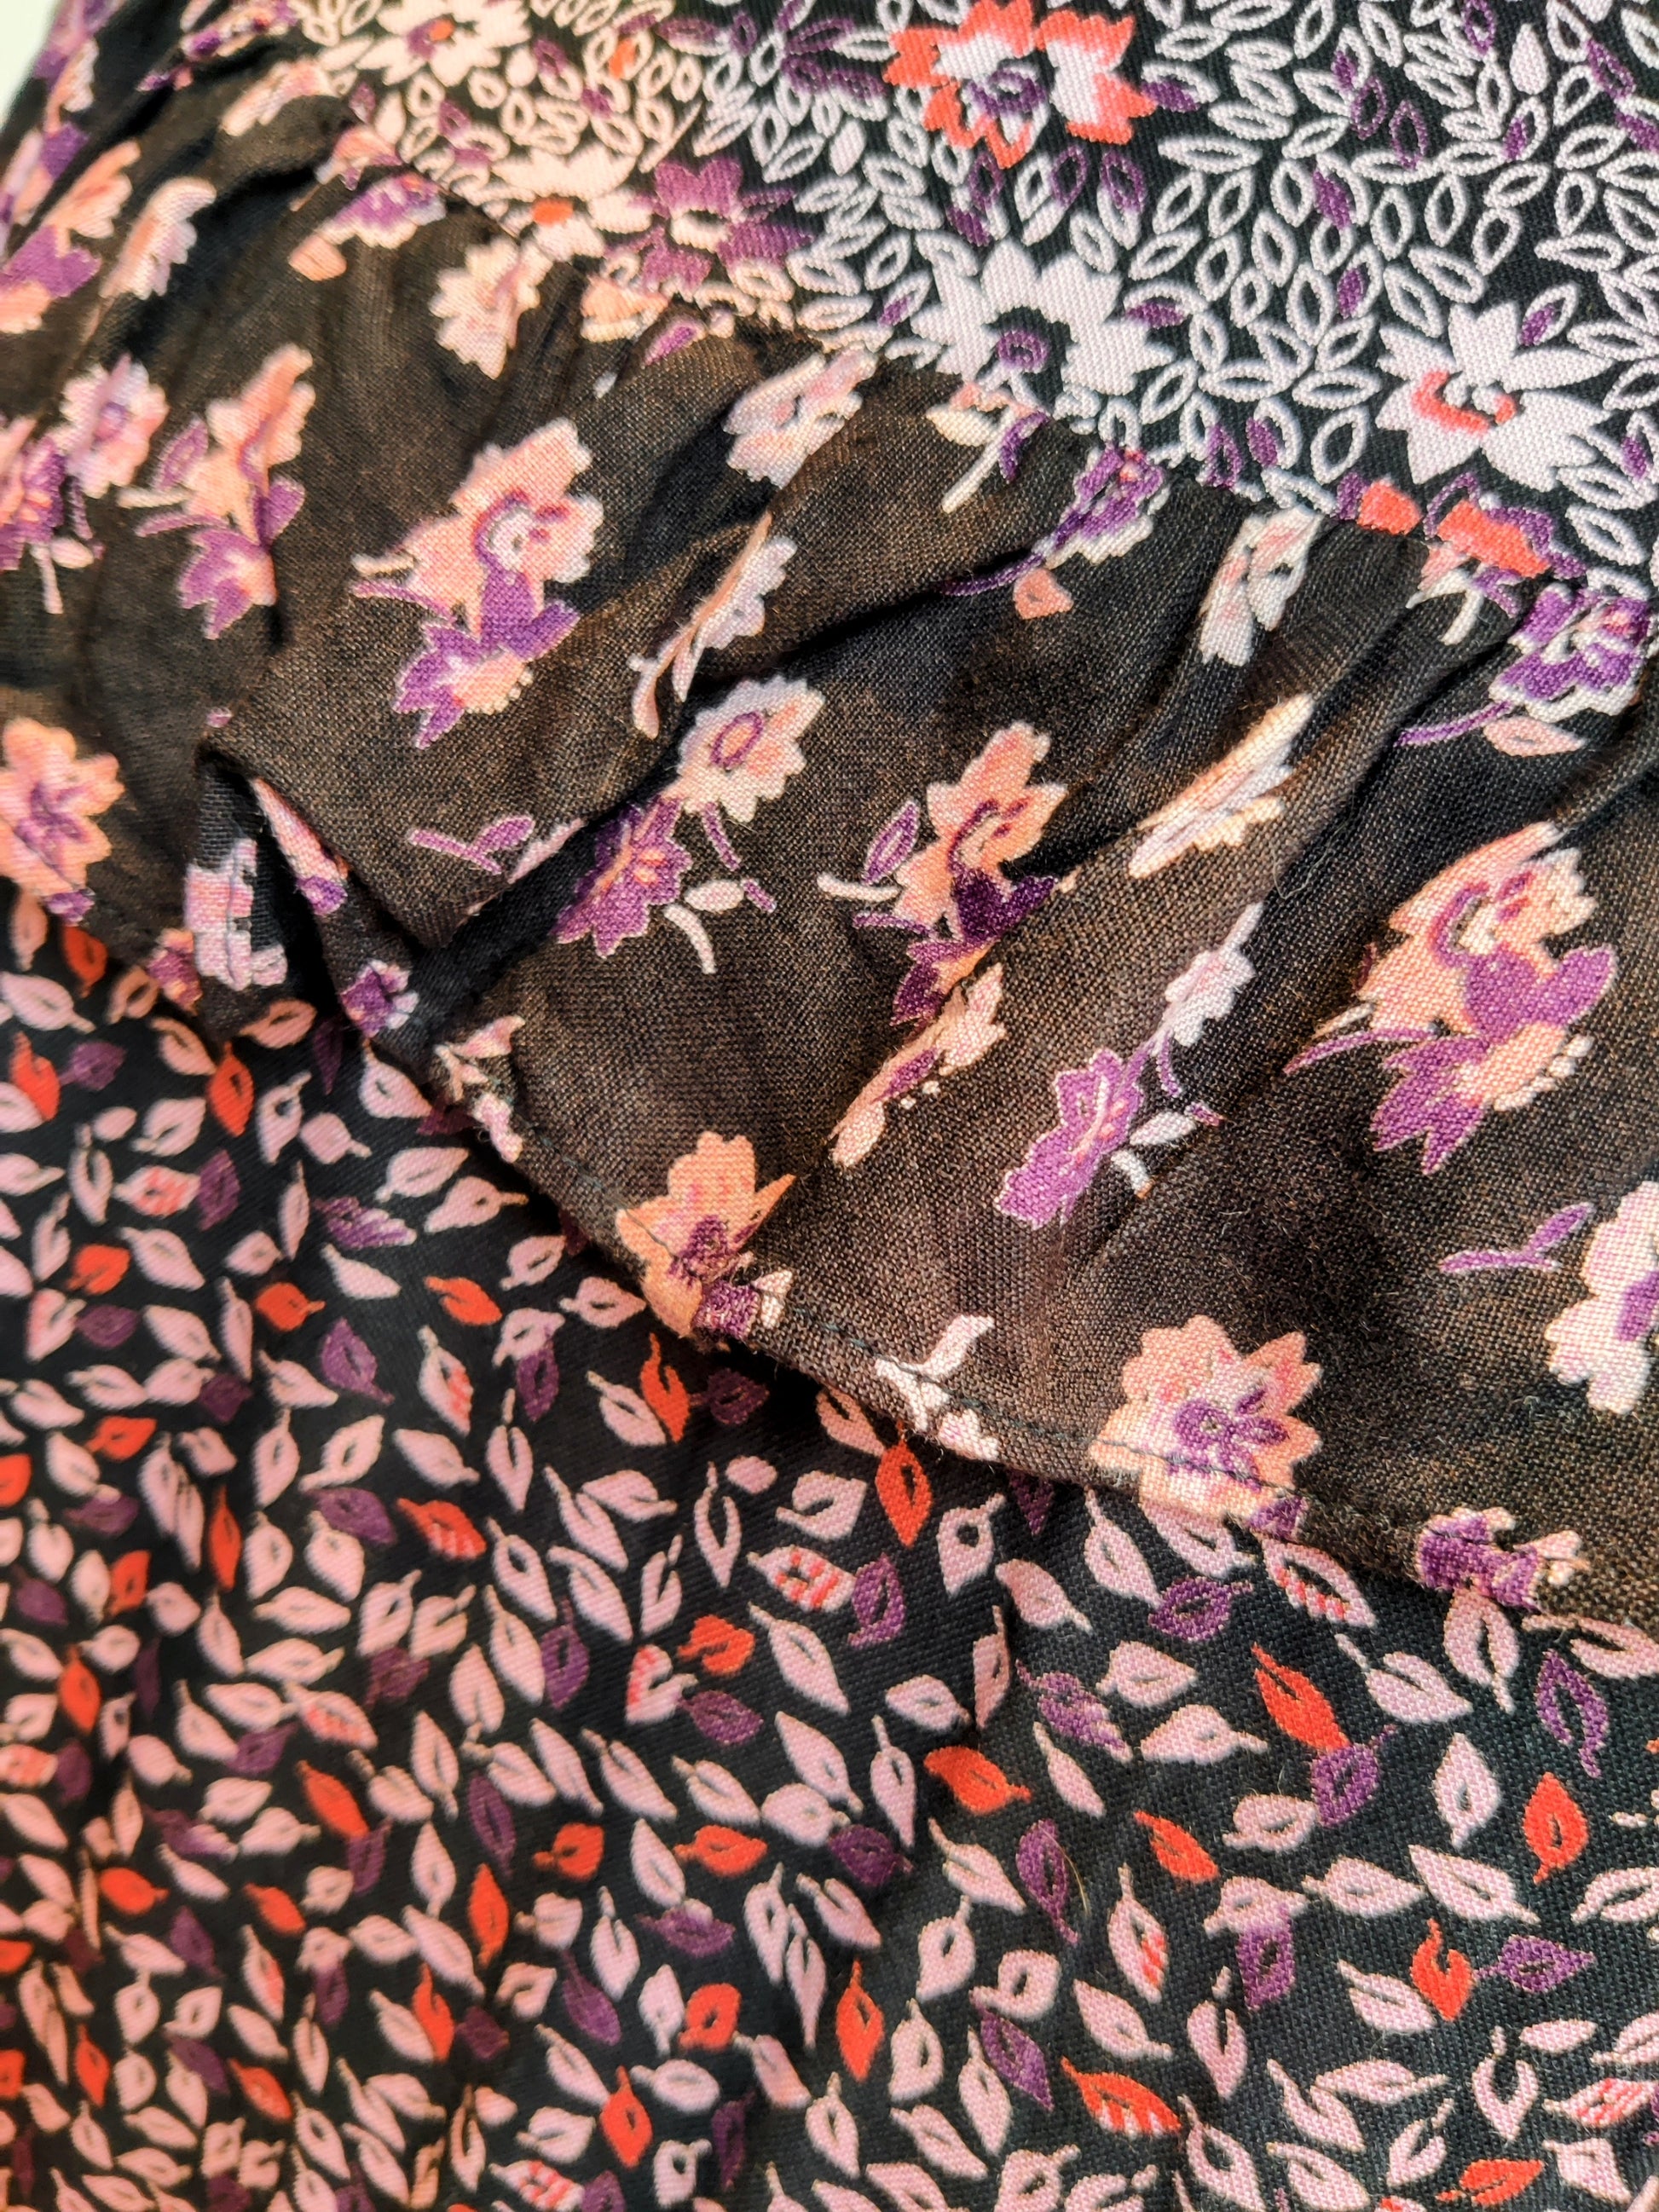 Variation of floral prints on 1970s dress